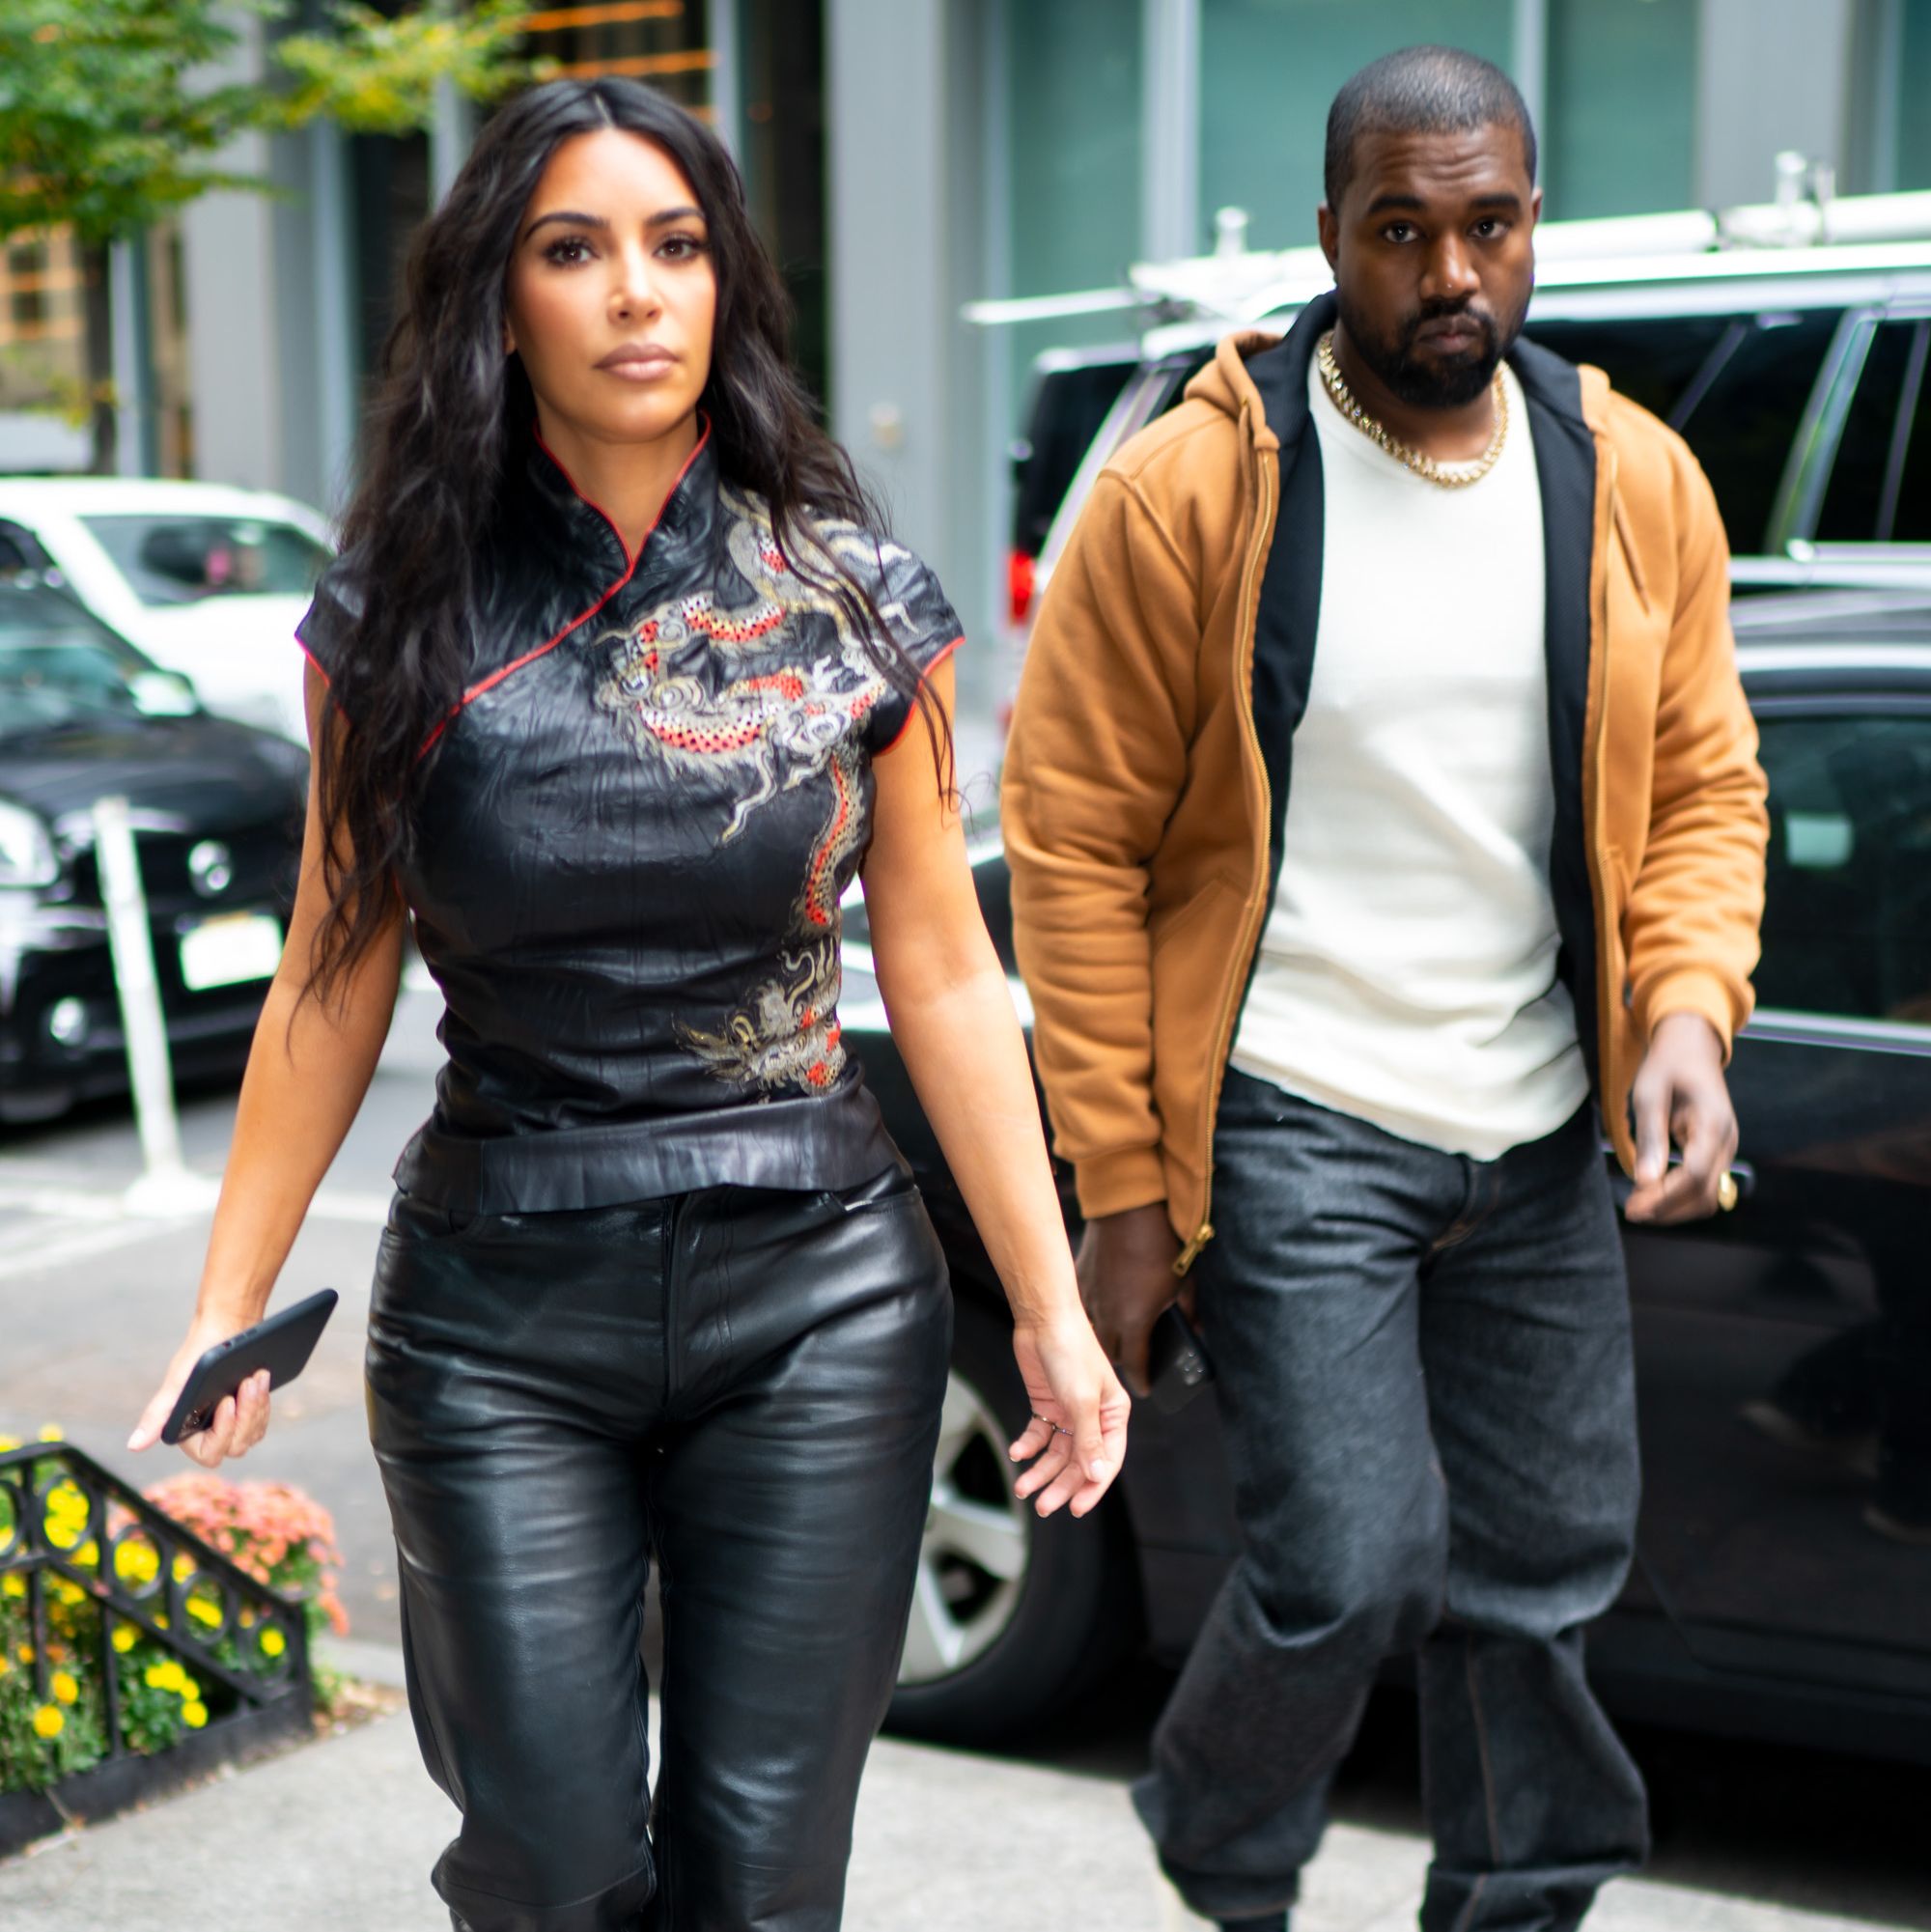 Kim Kardashian Says Kanye West's Instagram Posts 